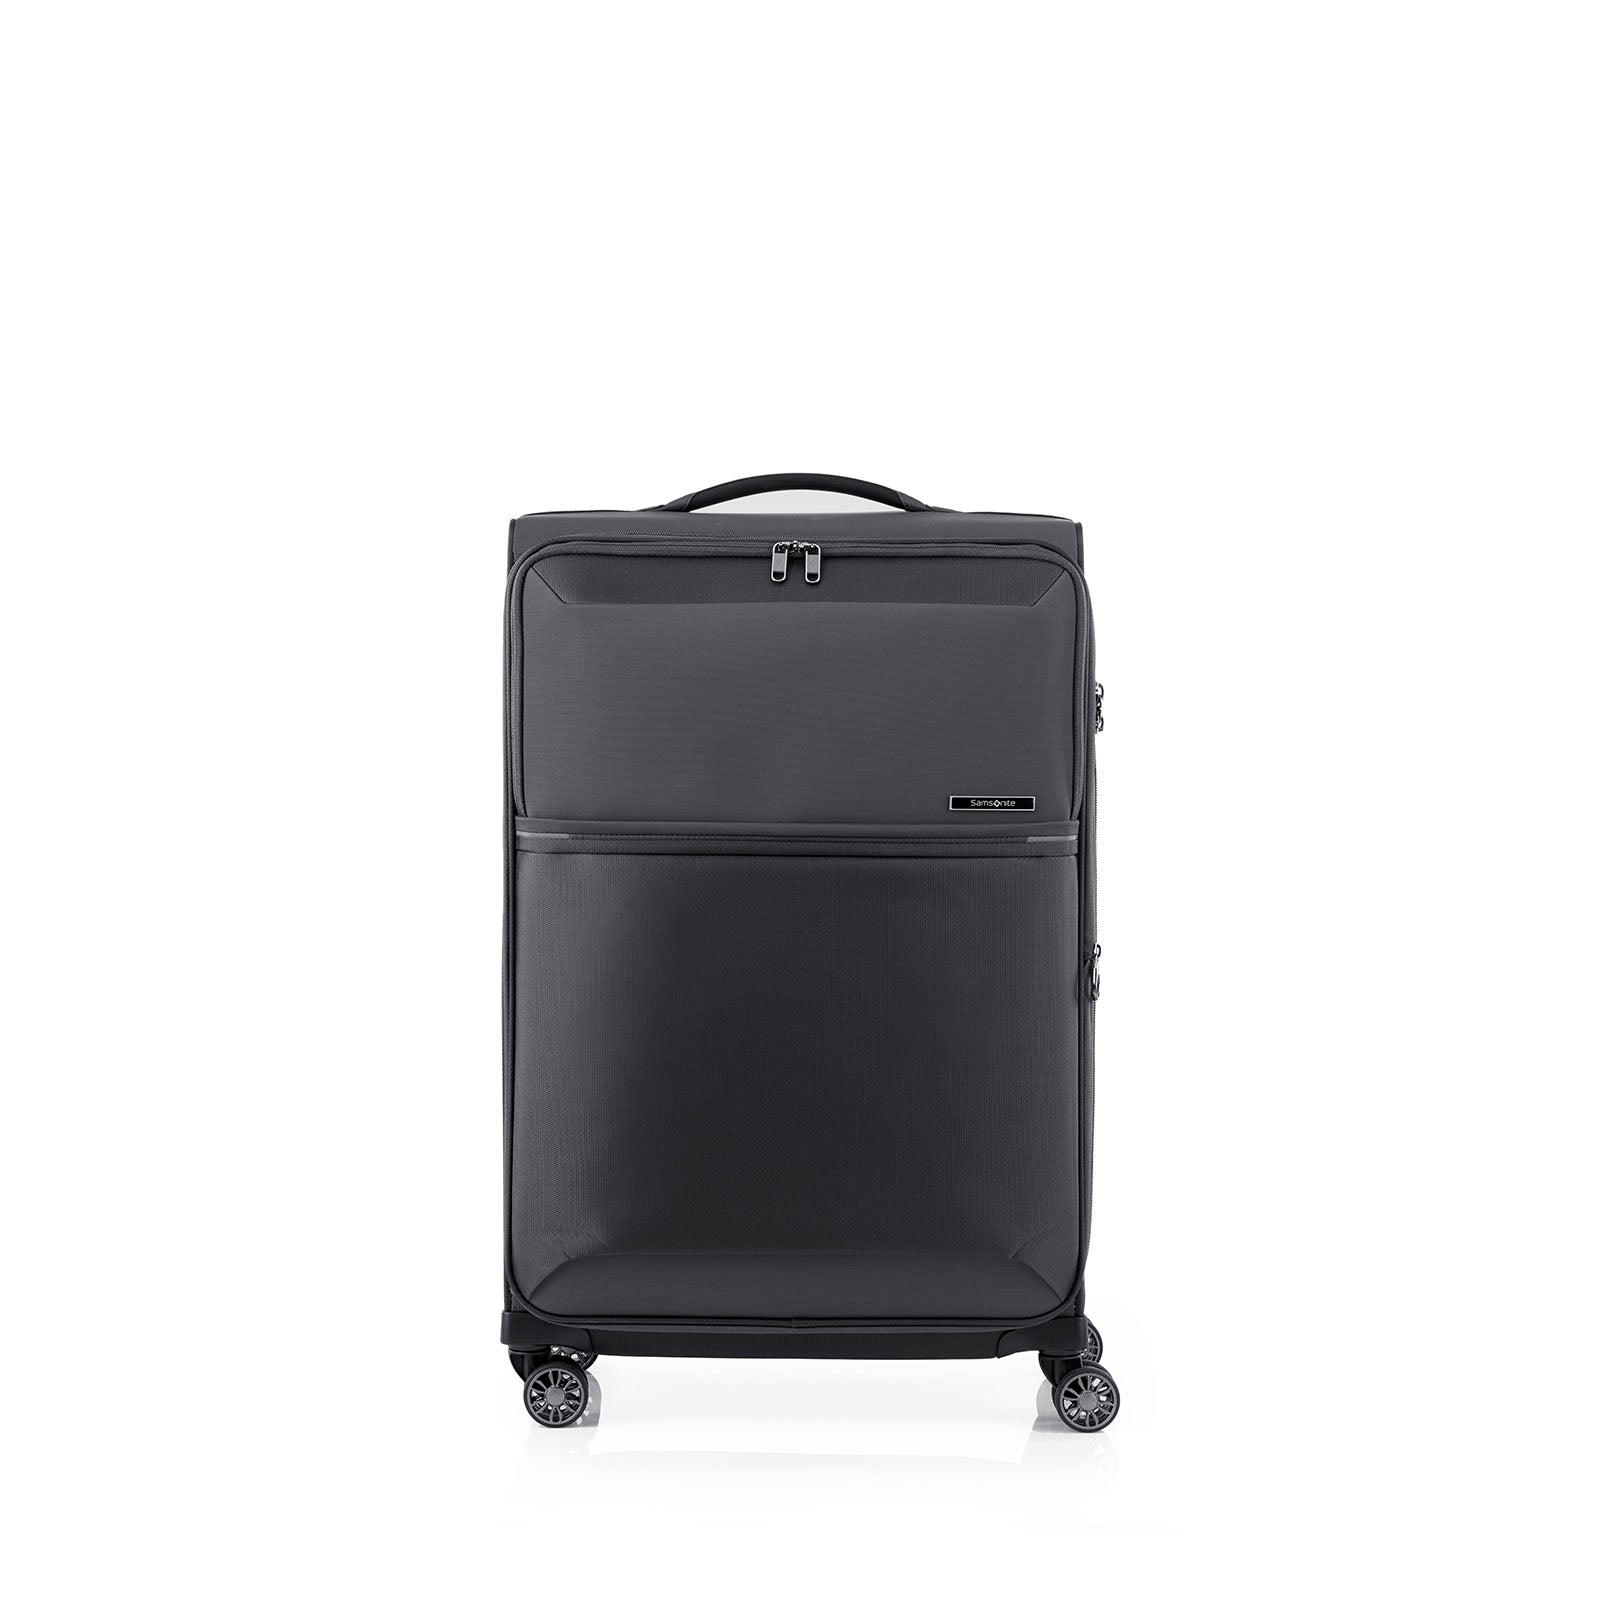 Samsonite-73h-71cm-Suitcase-Black-Front